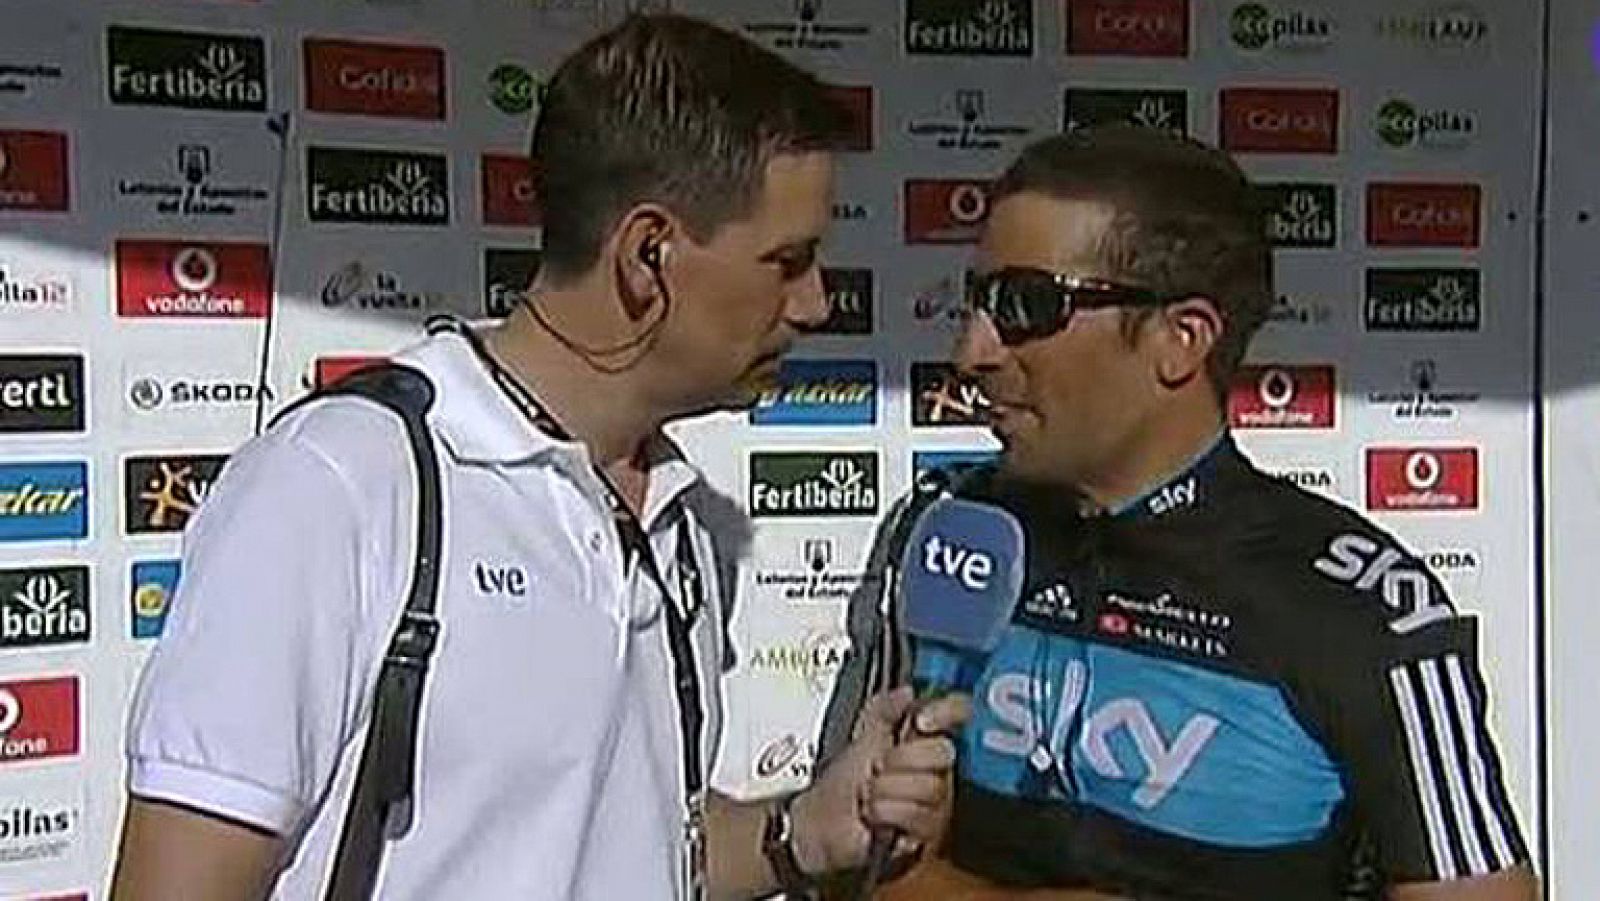 El corredor del Sky habla sobre la polémica del día. El equipo Movistar ha acusado al Sky de tirar después de provocar la caída del líder Alejandro Valverde. Flecha no ve culpabilidad en la caída ya que "estaba claro que era una situación de carrera